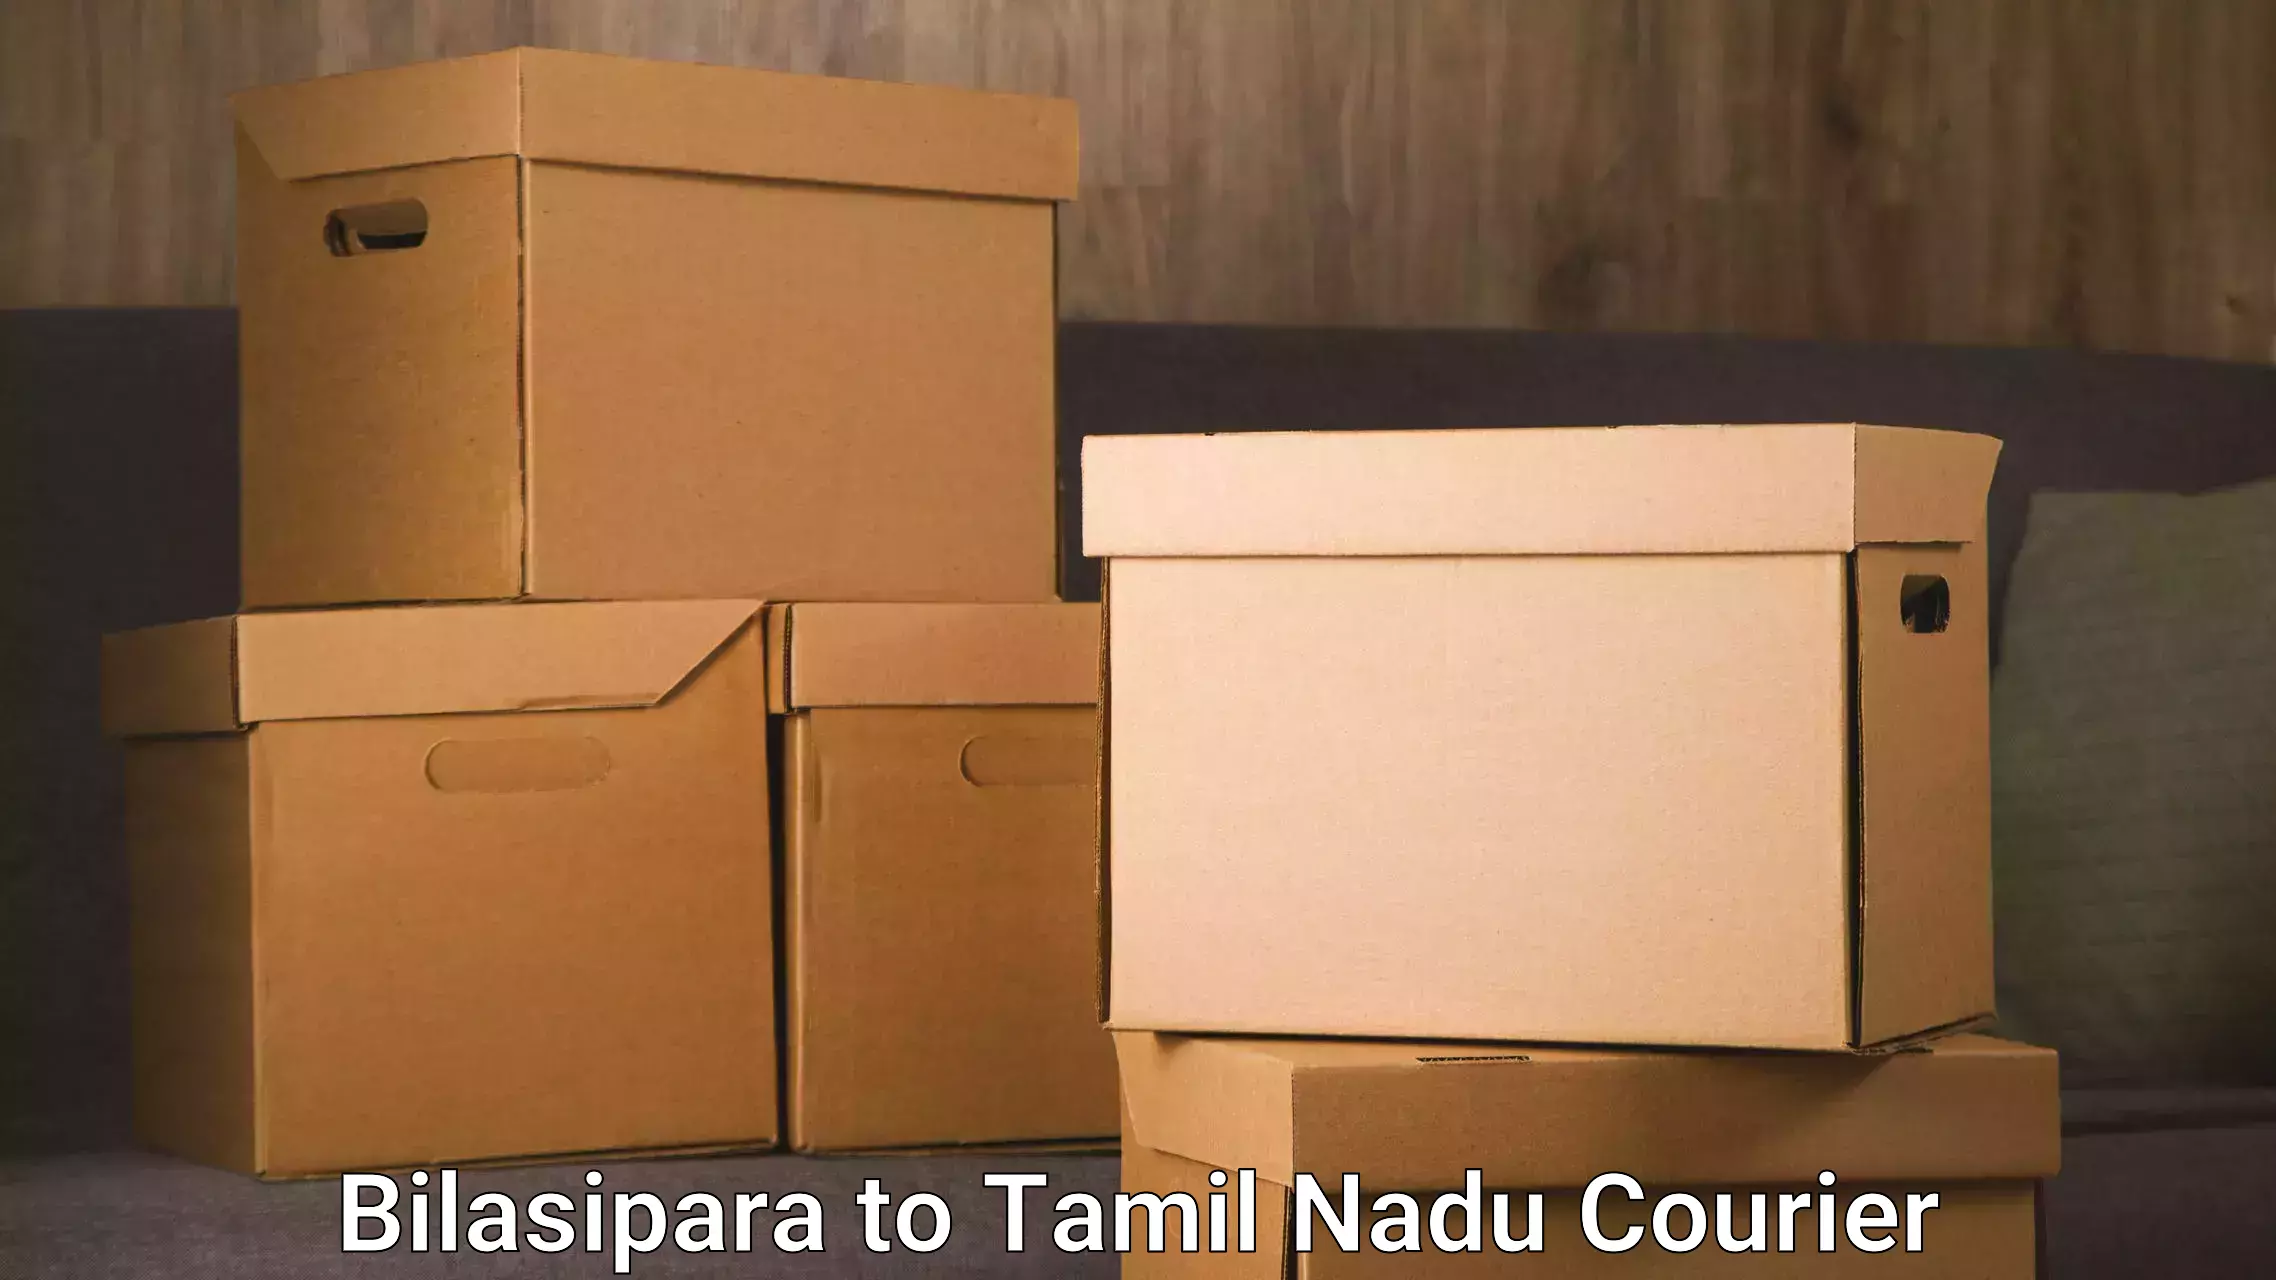 Tech-enabled shipping Bilasipara to Tamil Nadu